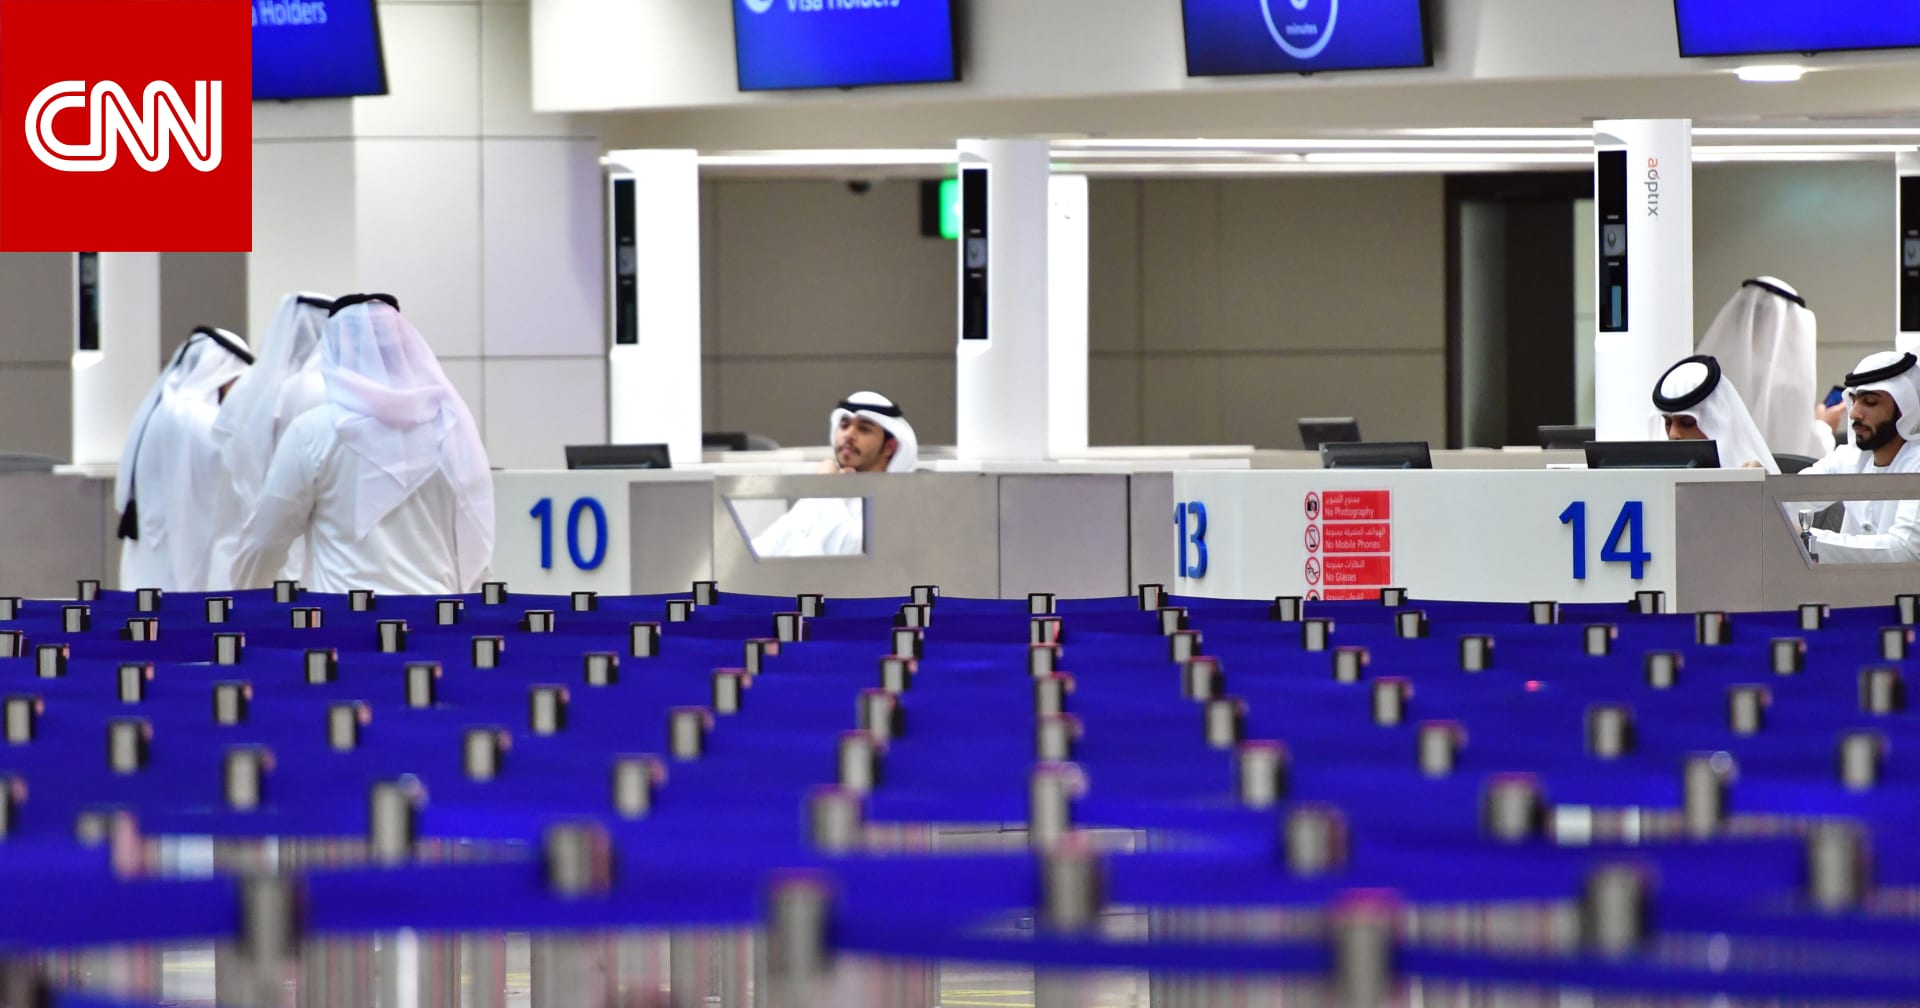 بسبب فيروس كورونا.. الإمارات تعلن حظر دخول كل المسافرين من كل الجنسيات للبلاد وتحدد استثناءات - CNN Arabic